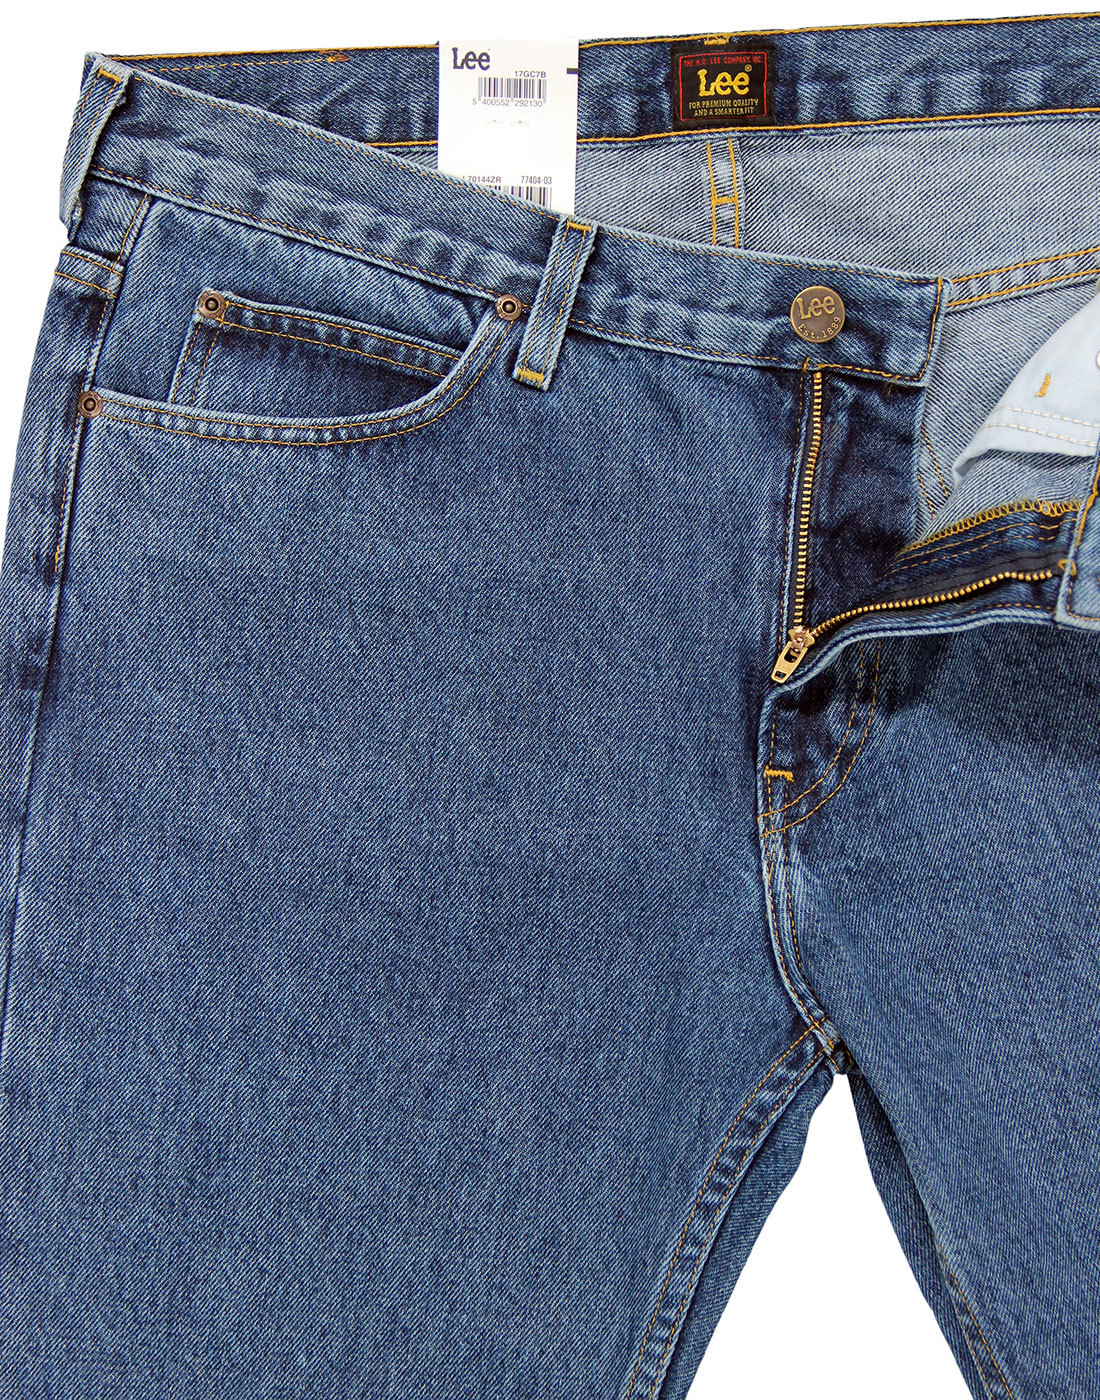 LEE Rider Retro Mod Original Rigid Cotton Stonewash Denim Jeans